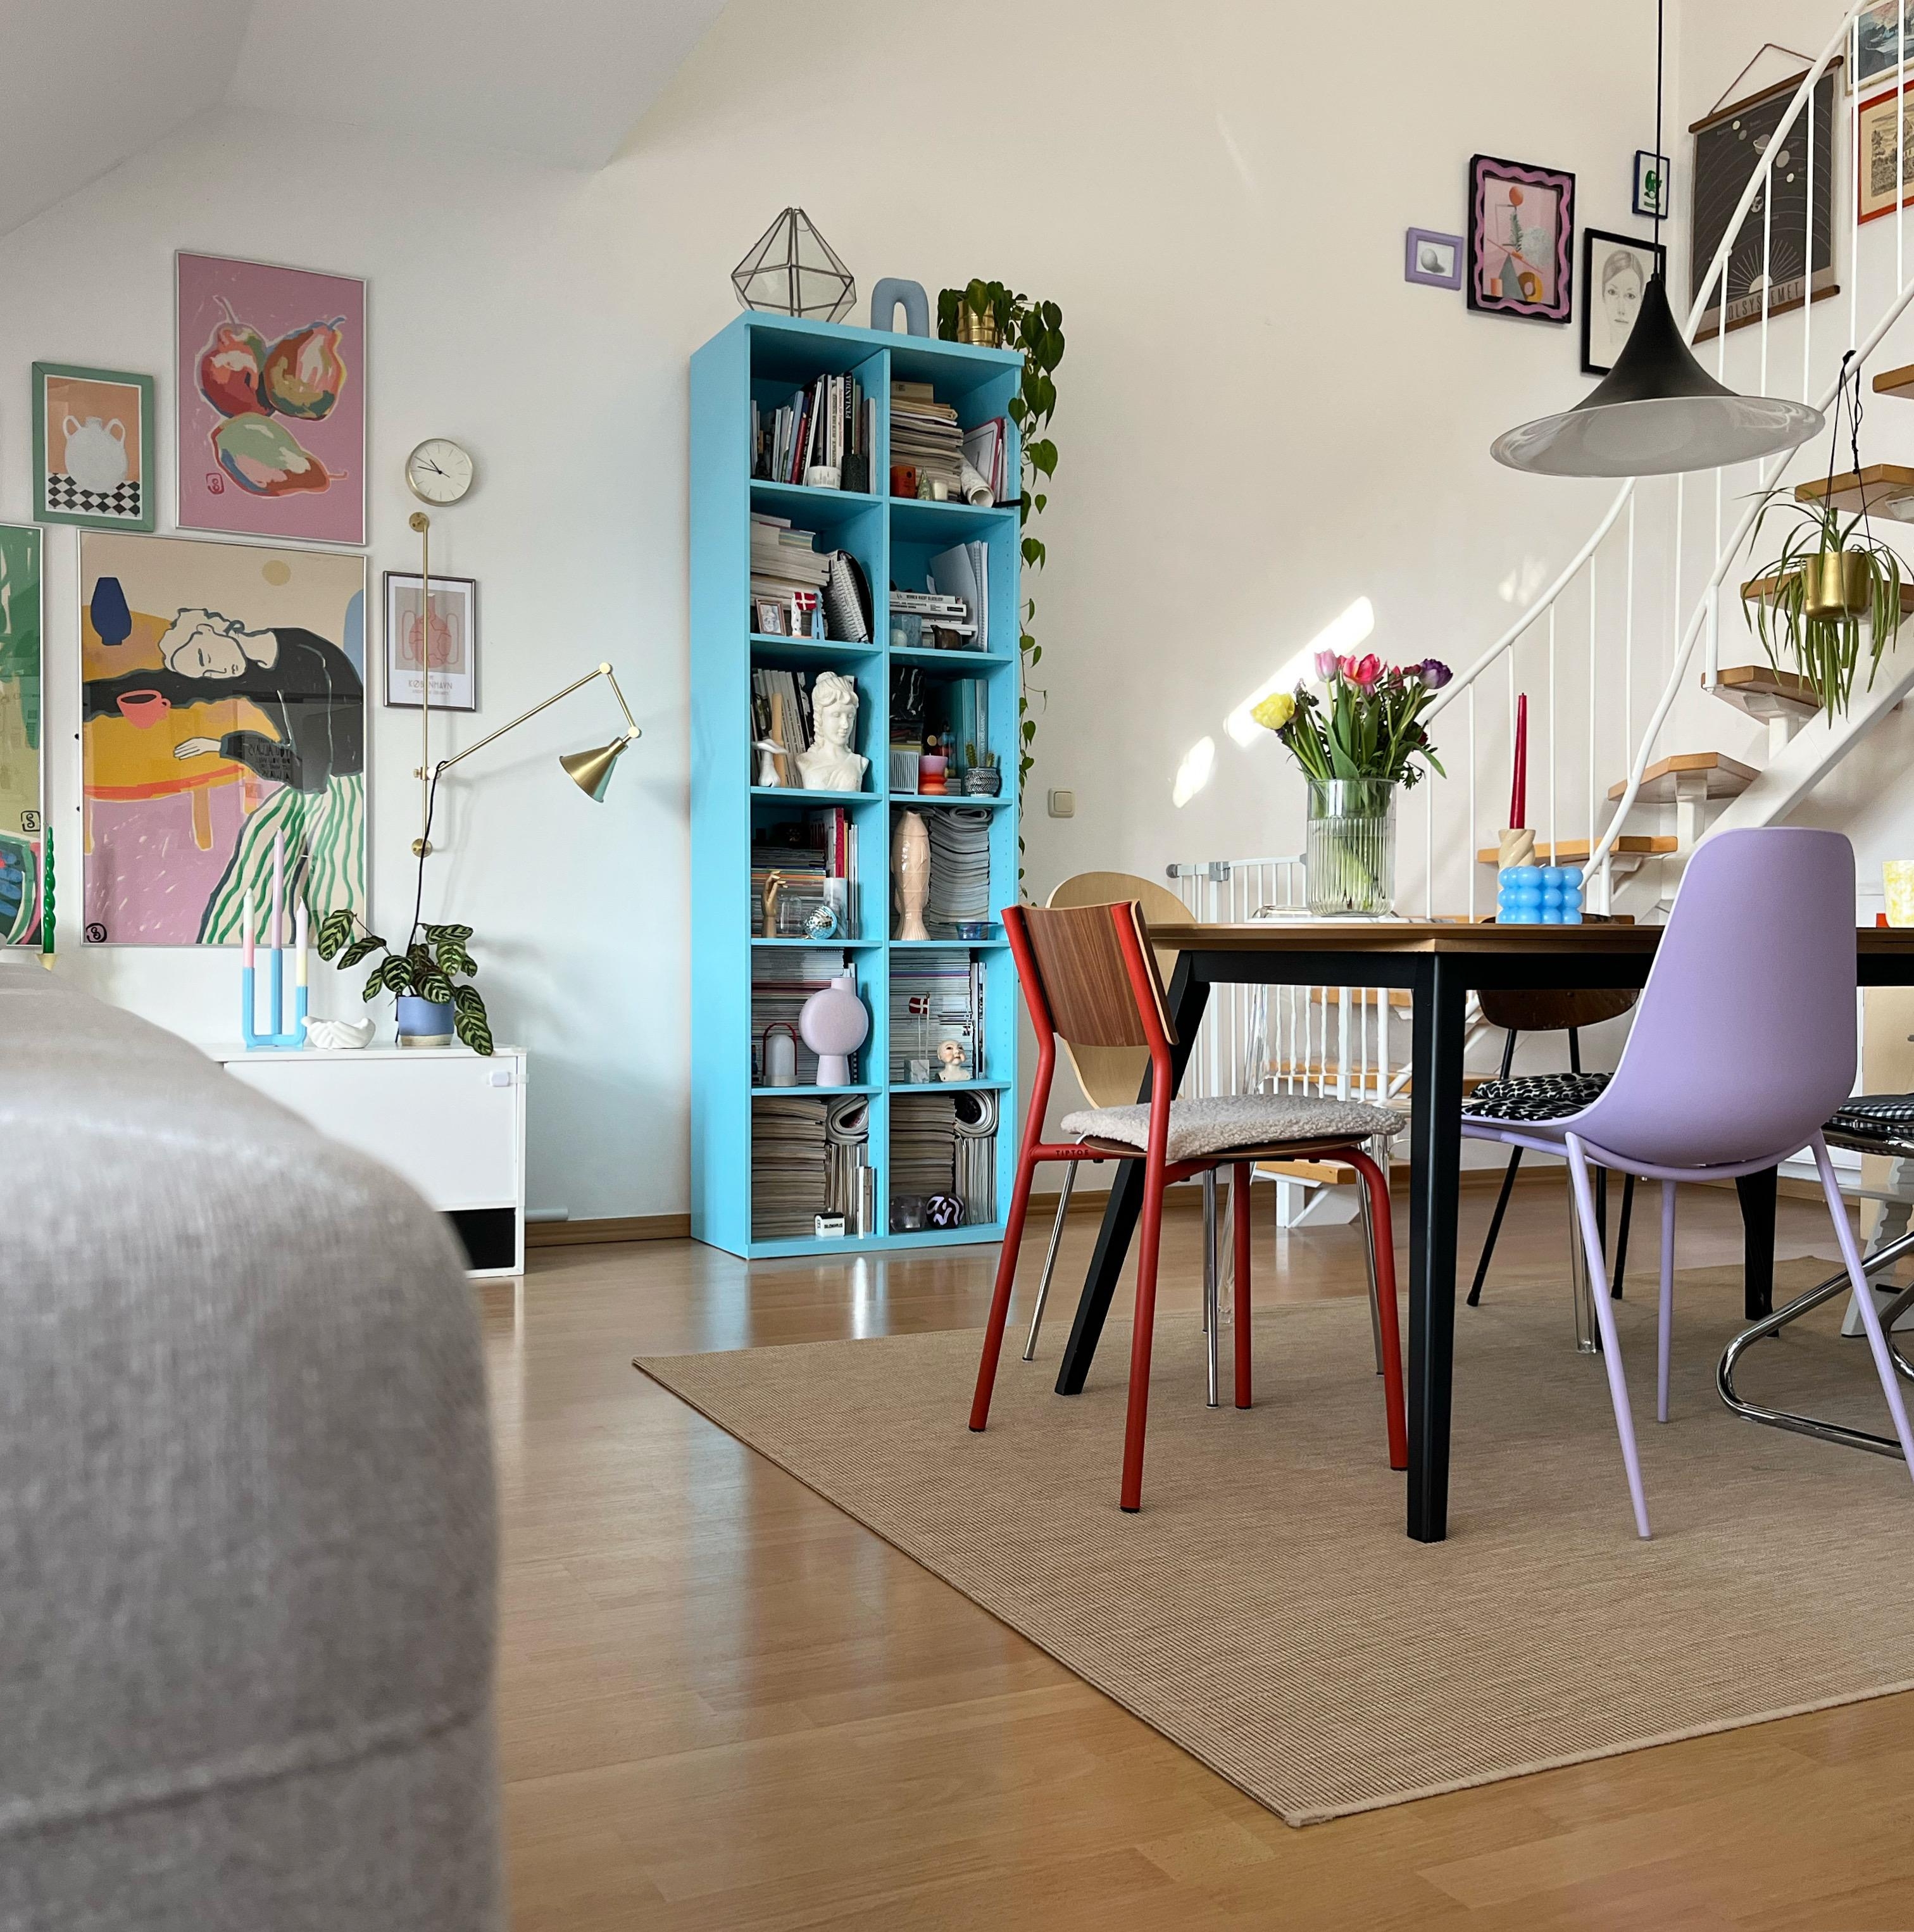 Unser offener Wohnbereich 💙
#colourfulhome #livingroom #wohnzimmer #esstisch #wohntraum #interiorlove #maisonette 